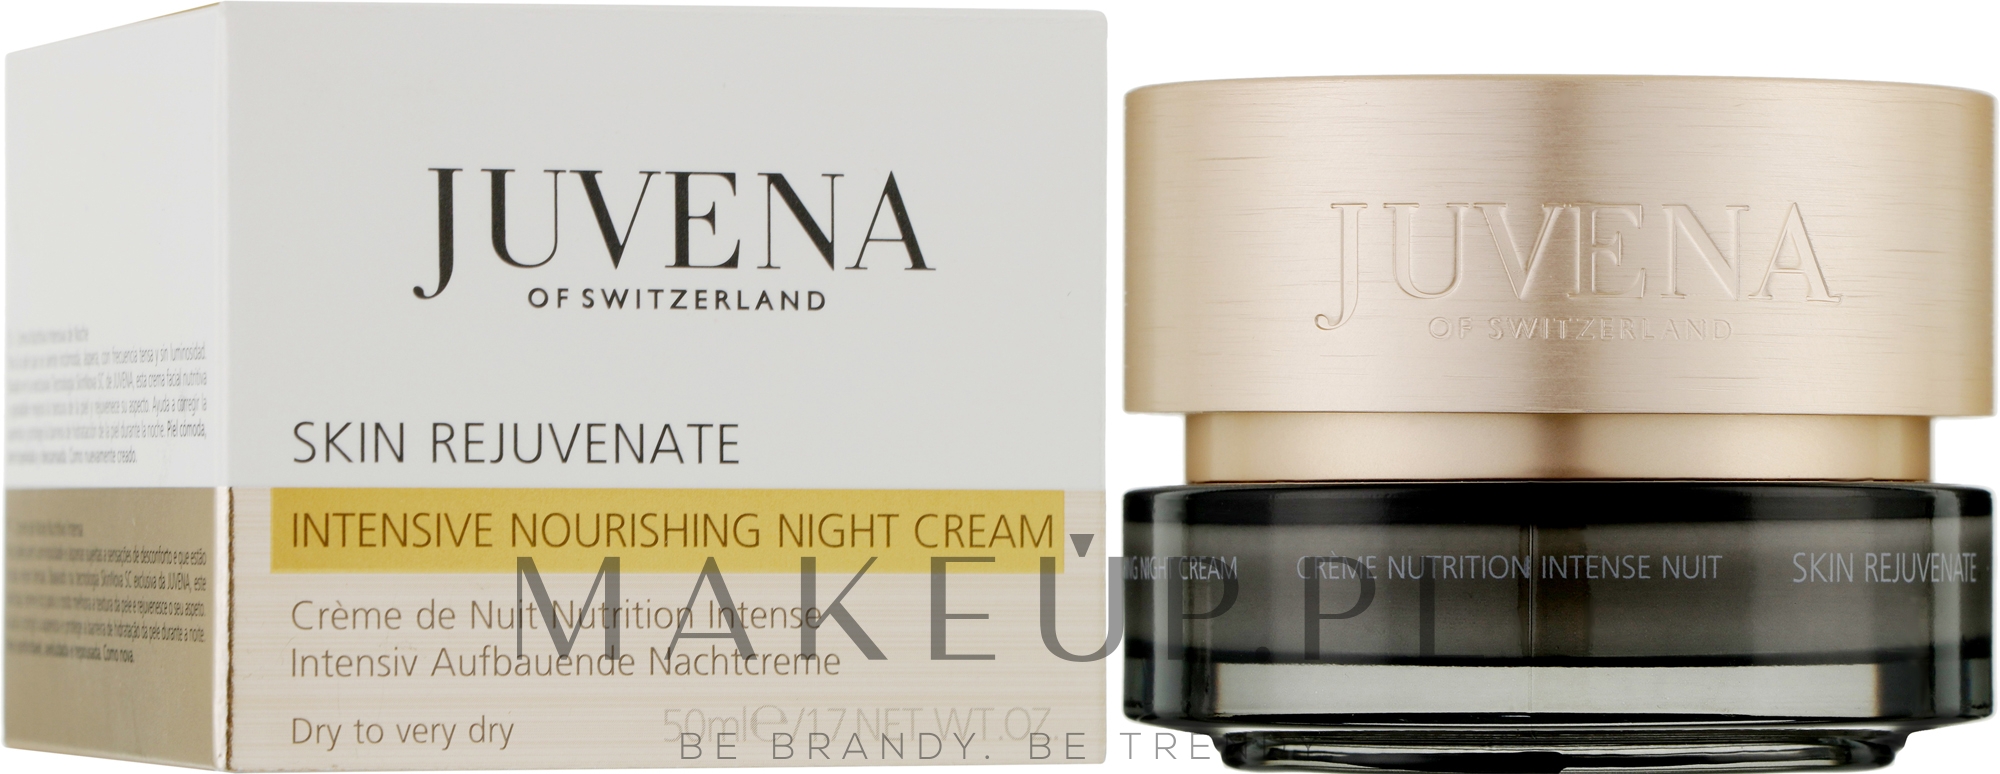 Odmładzająco intensywny krem na noc do skóry suchej i bardzo suchej - Juvena Skin Rejuvenate Intensive Nourishing Night Cream — Zdjęcie 50 ml